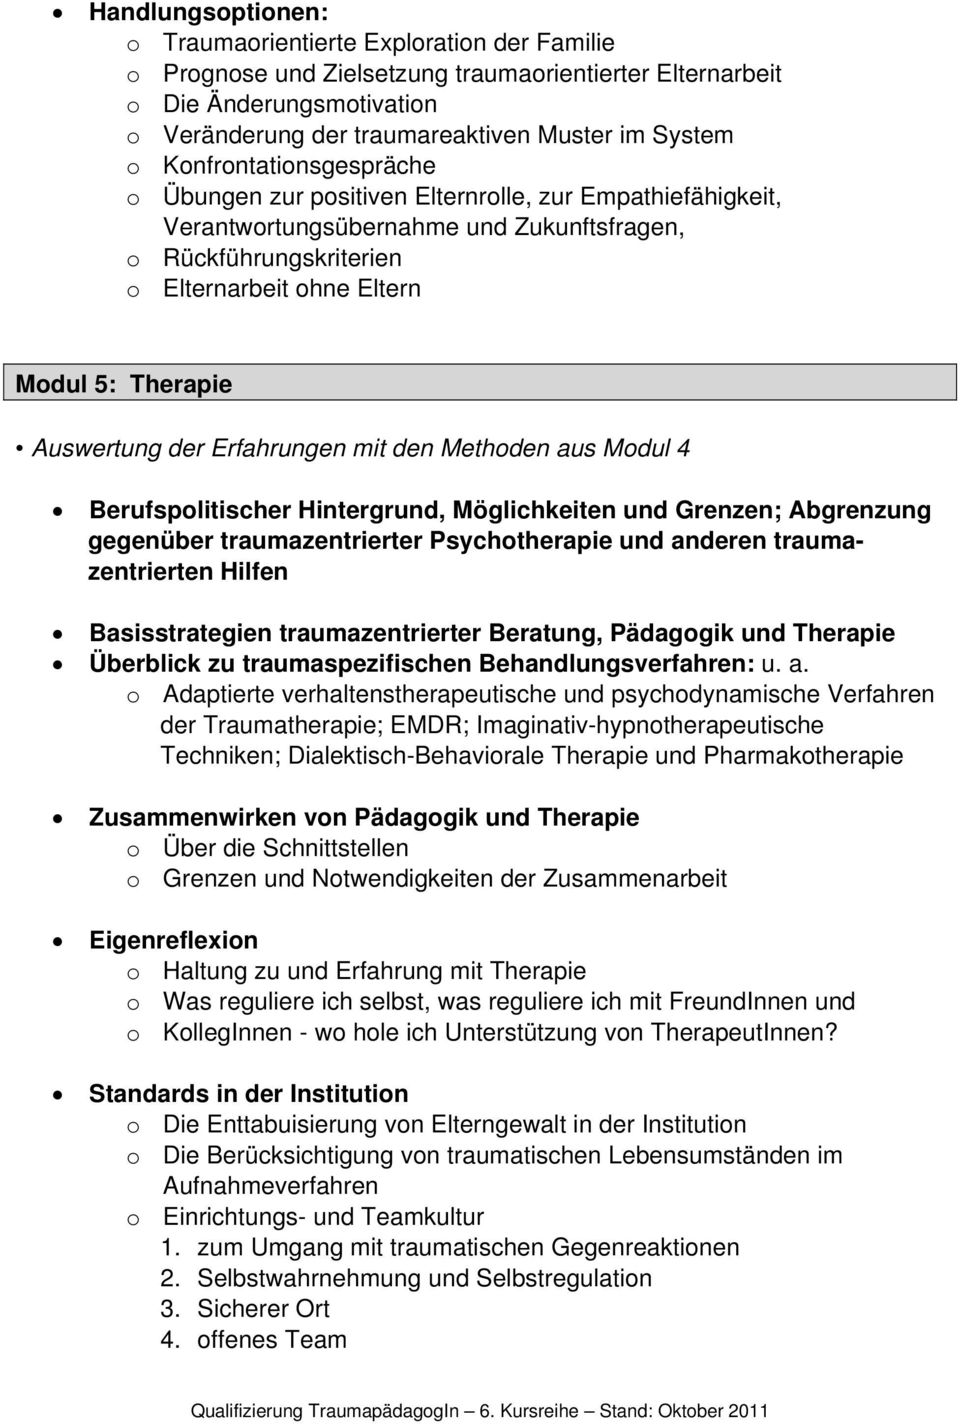 Auswertung der Erfahrungen mit den Methoden aus Modul 4 Berufspolitischer Hintergrund, Möglichkeiten und Grenzen; Abgrenzung gegenüber traumazentrierter Psychotherapie und anderen traumazentrierten